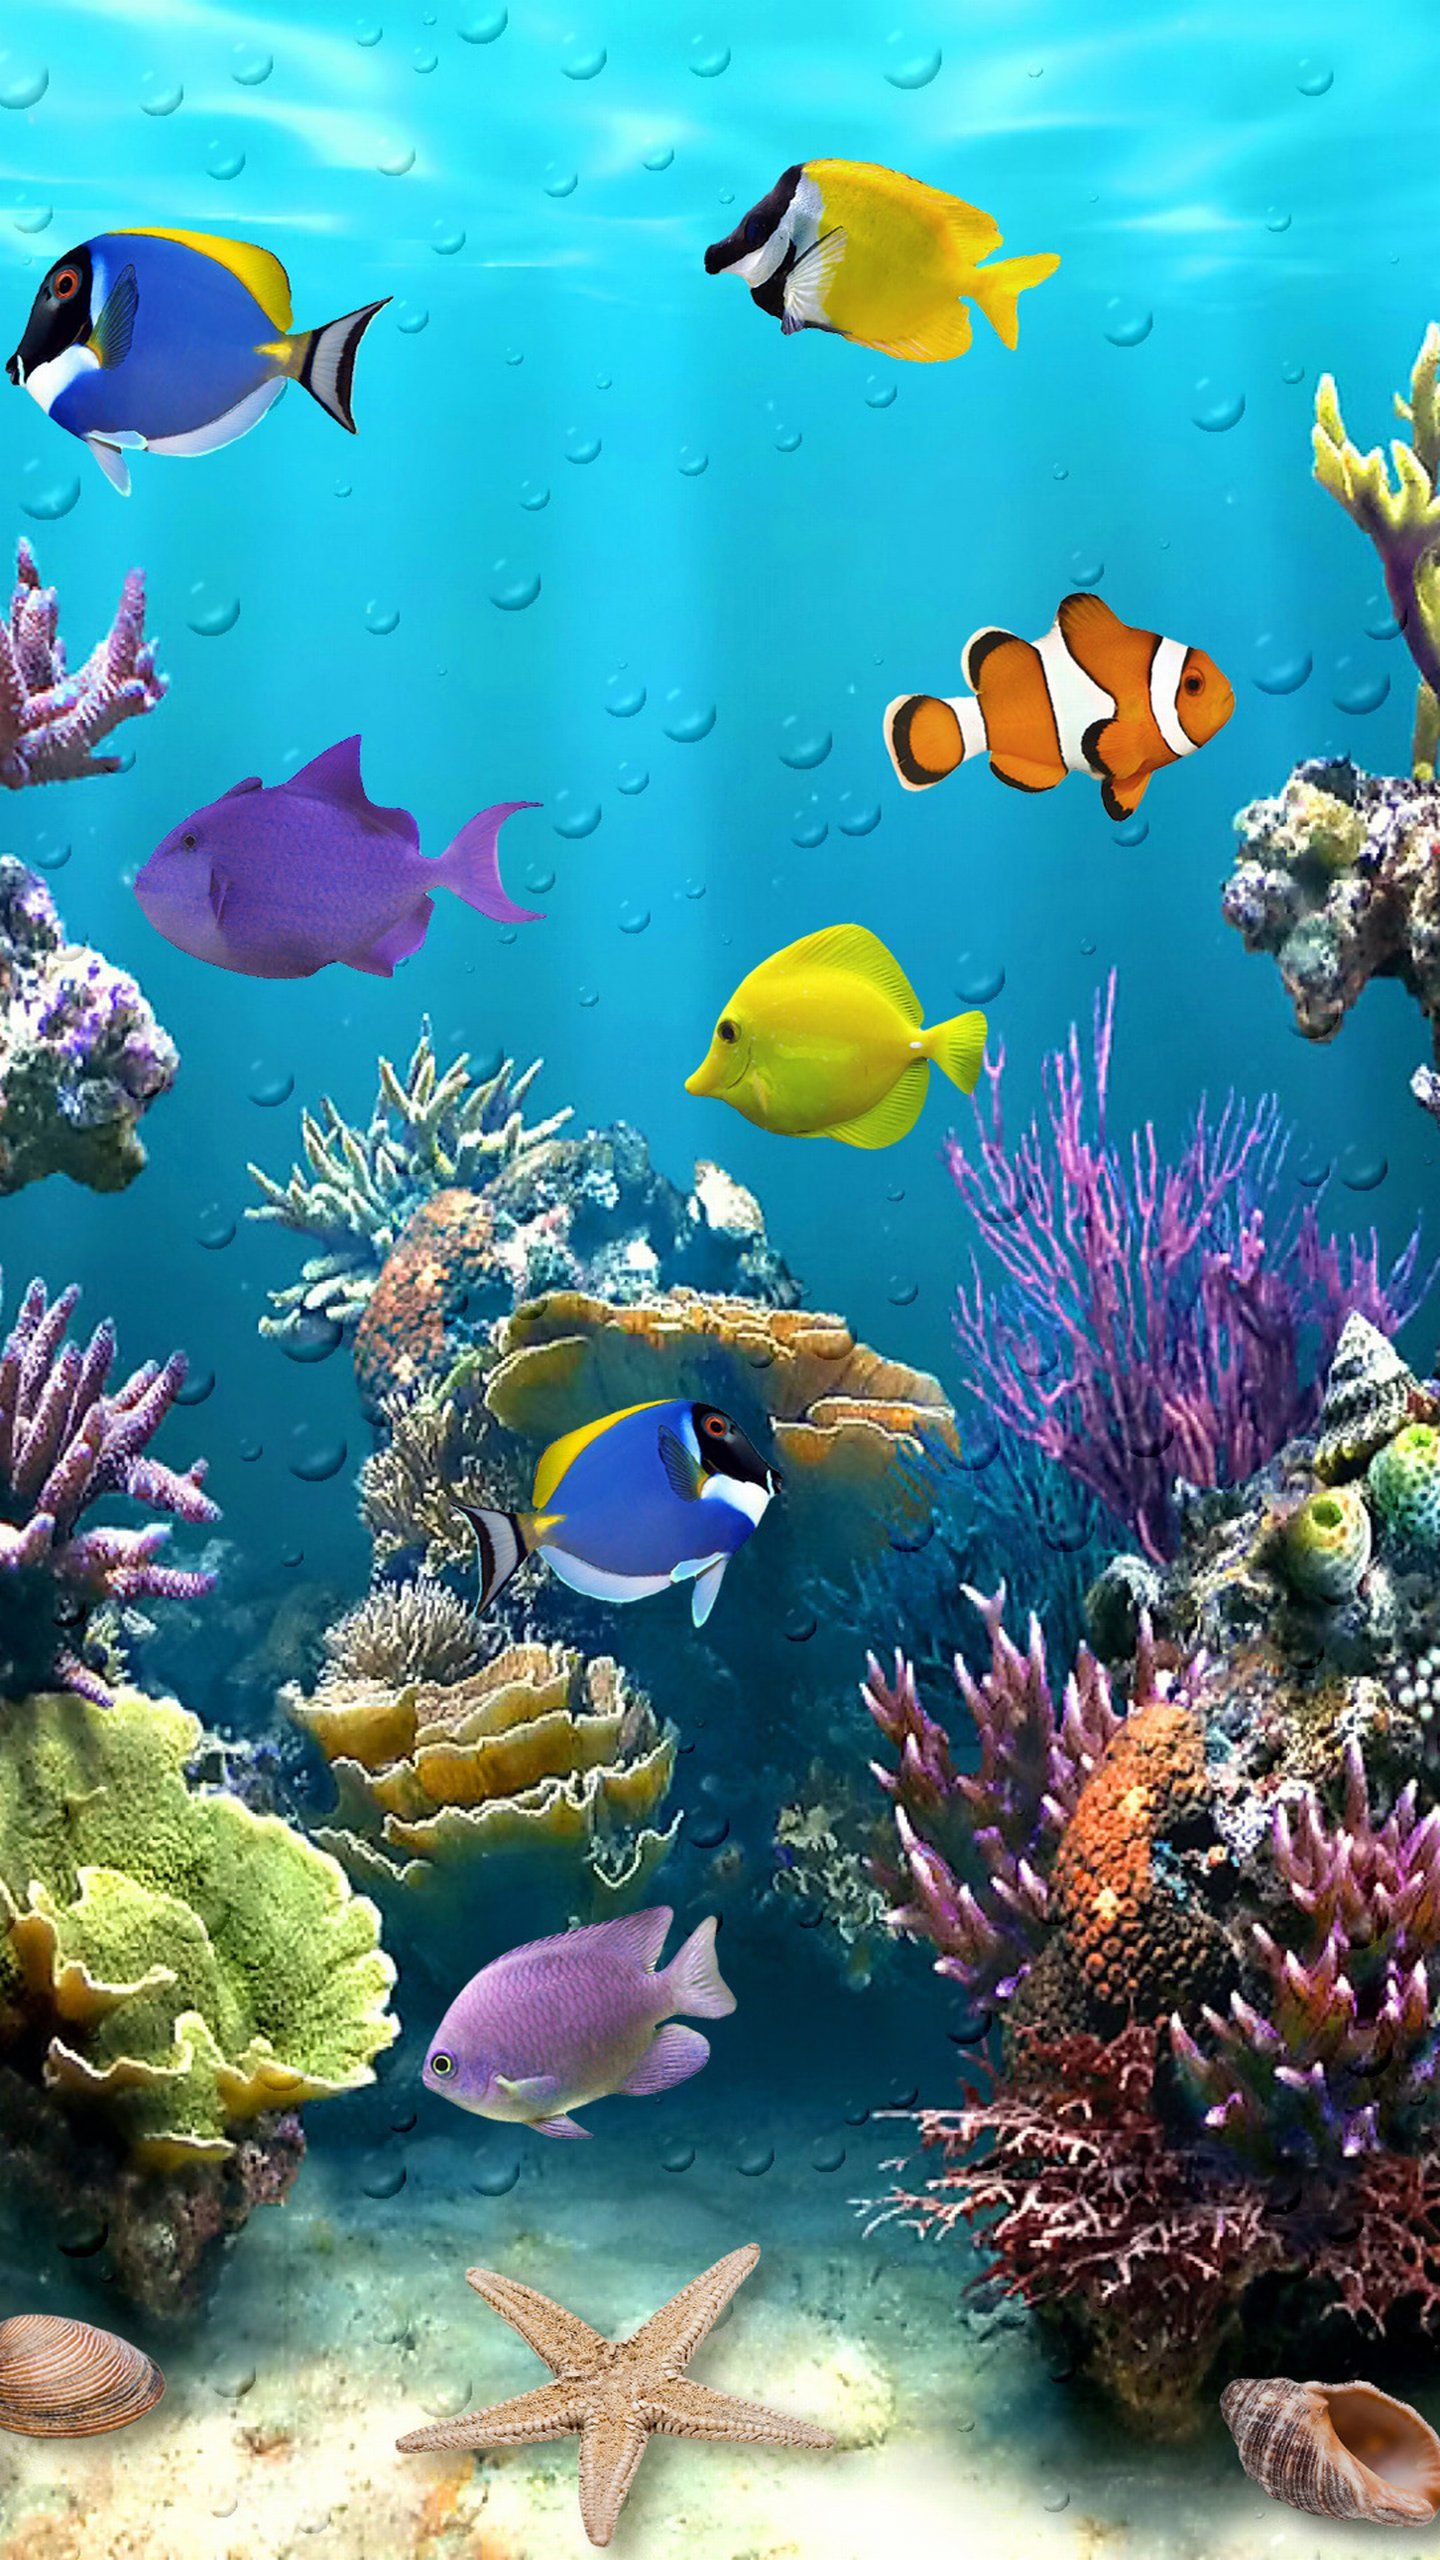 水中ライブ壁紙,サンゴ礁,リーフ,サンゴ礁の魚,魚,海洋生物学